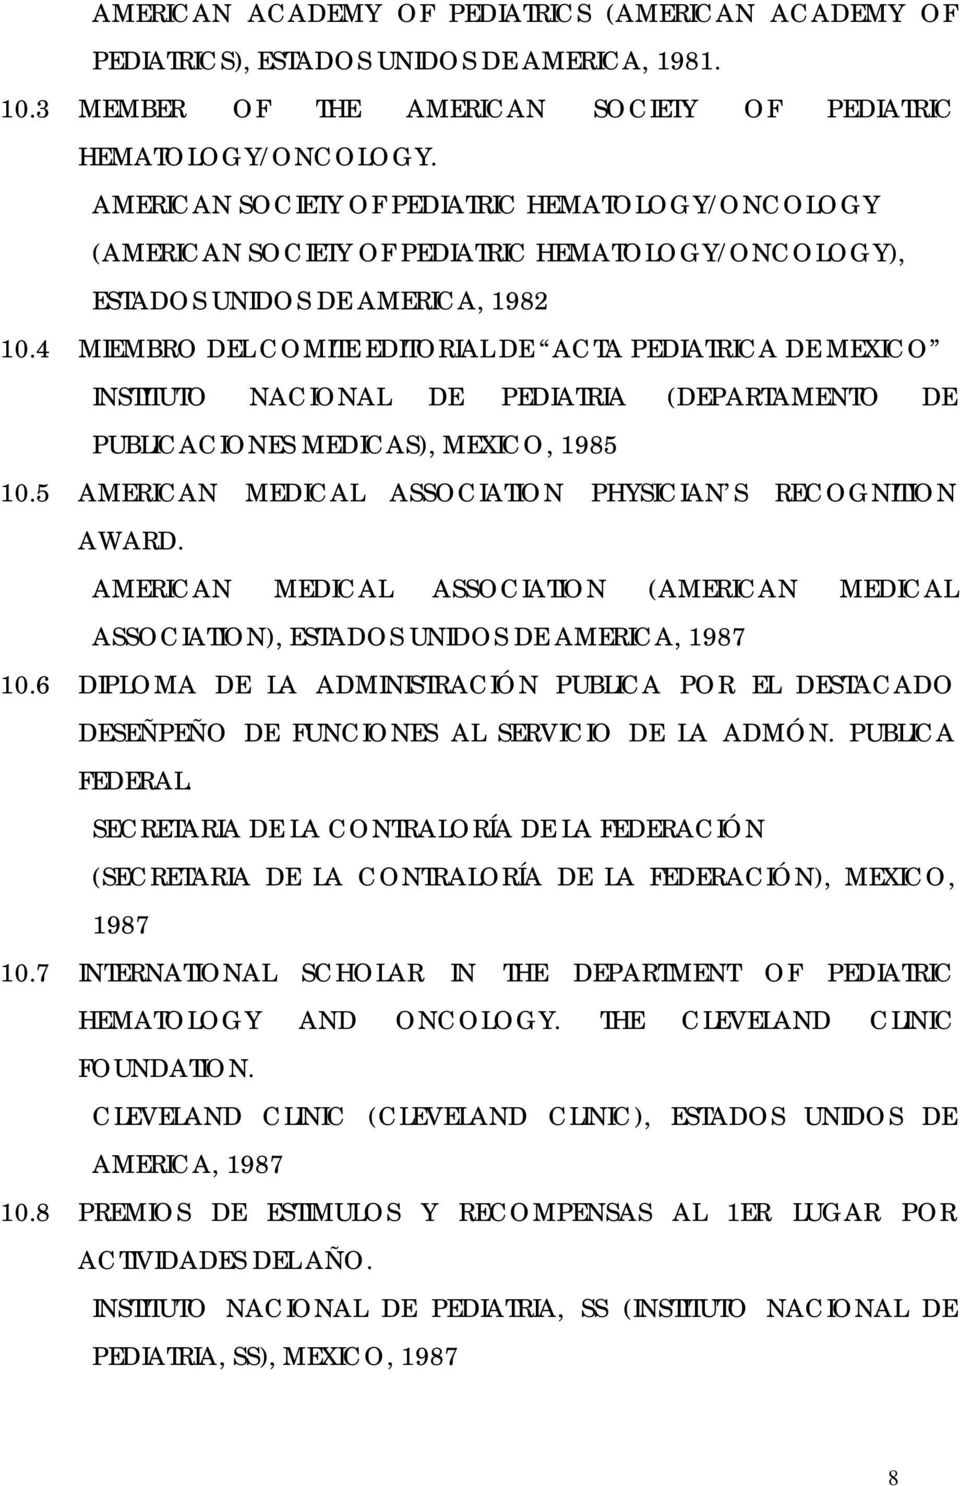 4 MIEMBRO DEL COMITE EDITORIAL DE ACTA PEDIATRICA DE MEXICO INSTITUTO NACIONAL DE PEDIATRIA (DEPARTAMENTO DE PUBLICACIONES MEDICAS), MEXICO, 1985 10.